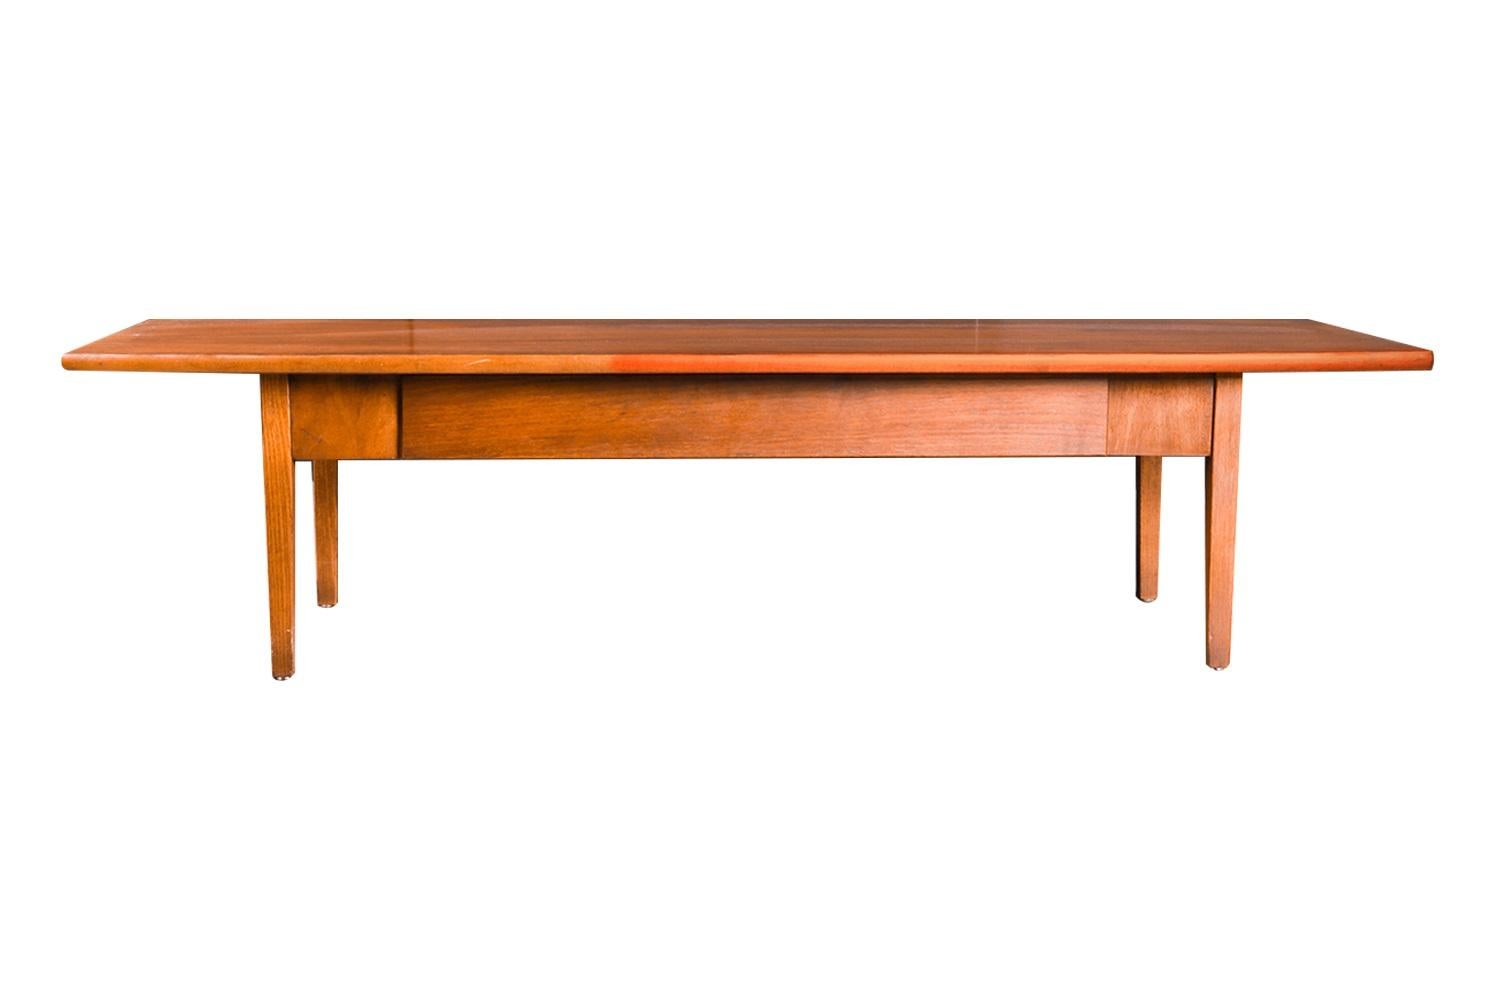 Une belle table à café/banc de style danois du milieu du siècle dernier, moderne, des années 1960, par Stanley Furniture. La longueur parfaite pour aller avec un canapé extra long, en excellent état d'origine. Dessus rectangulaire, d'influence